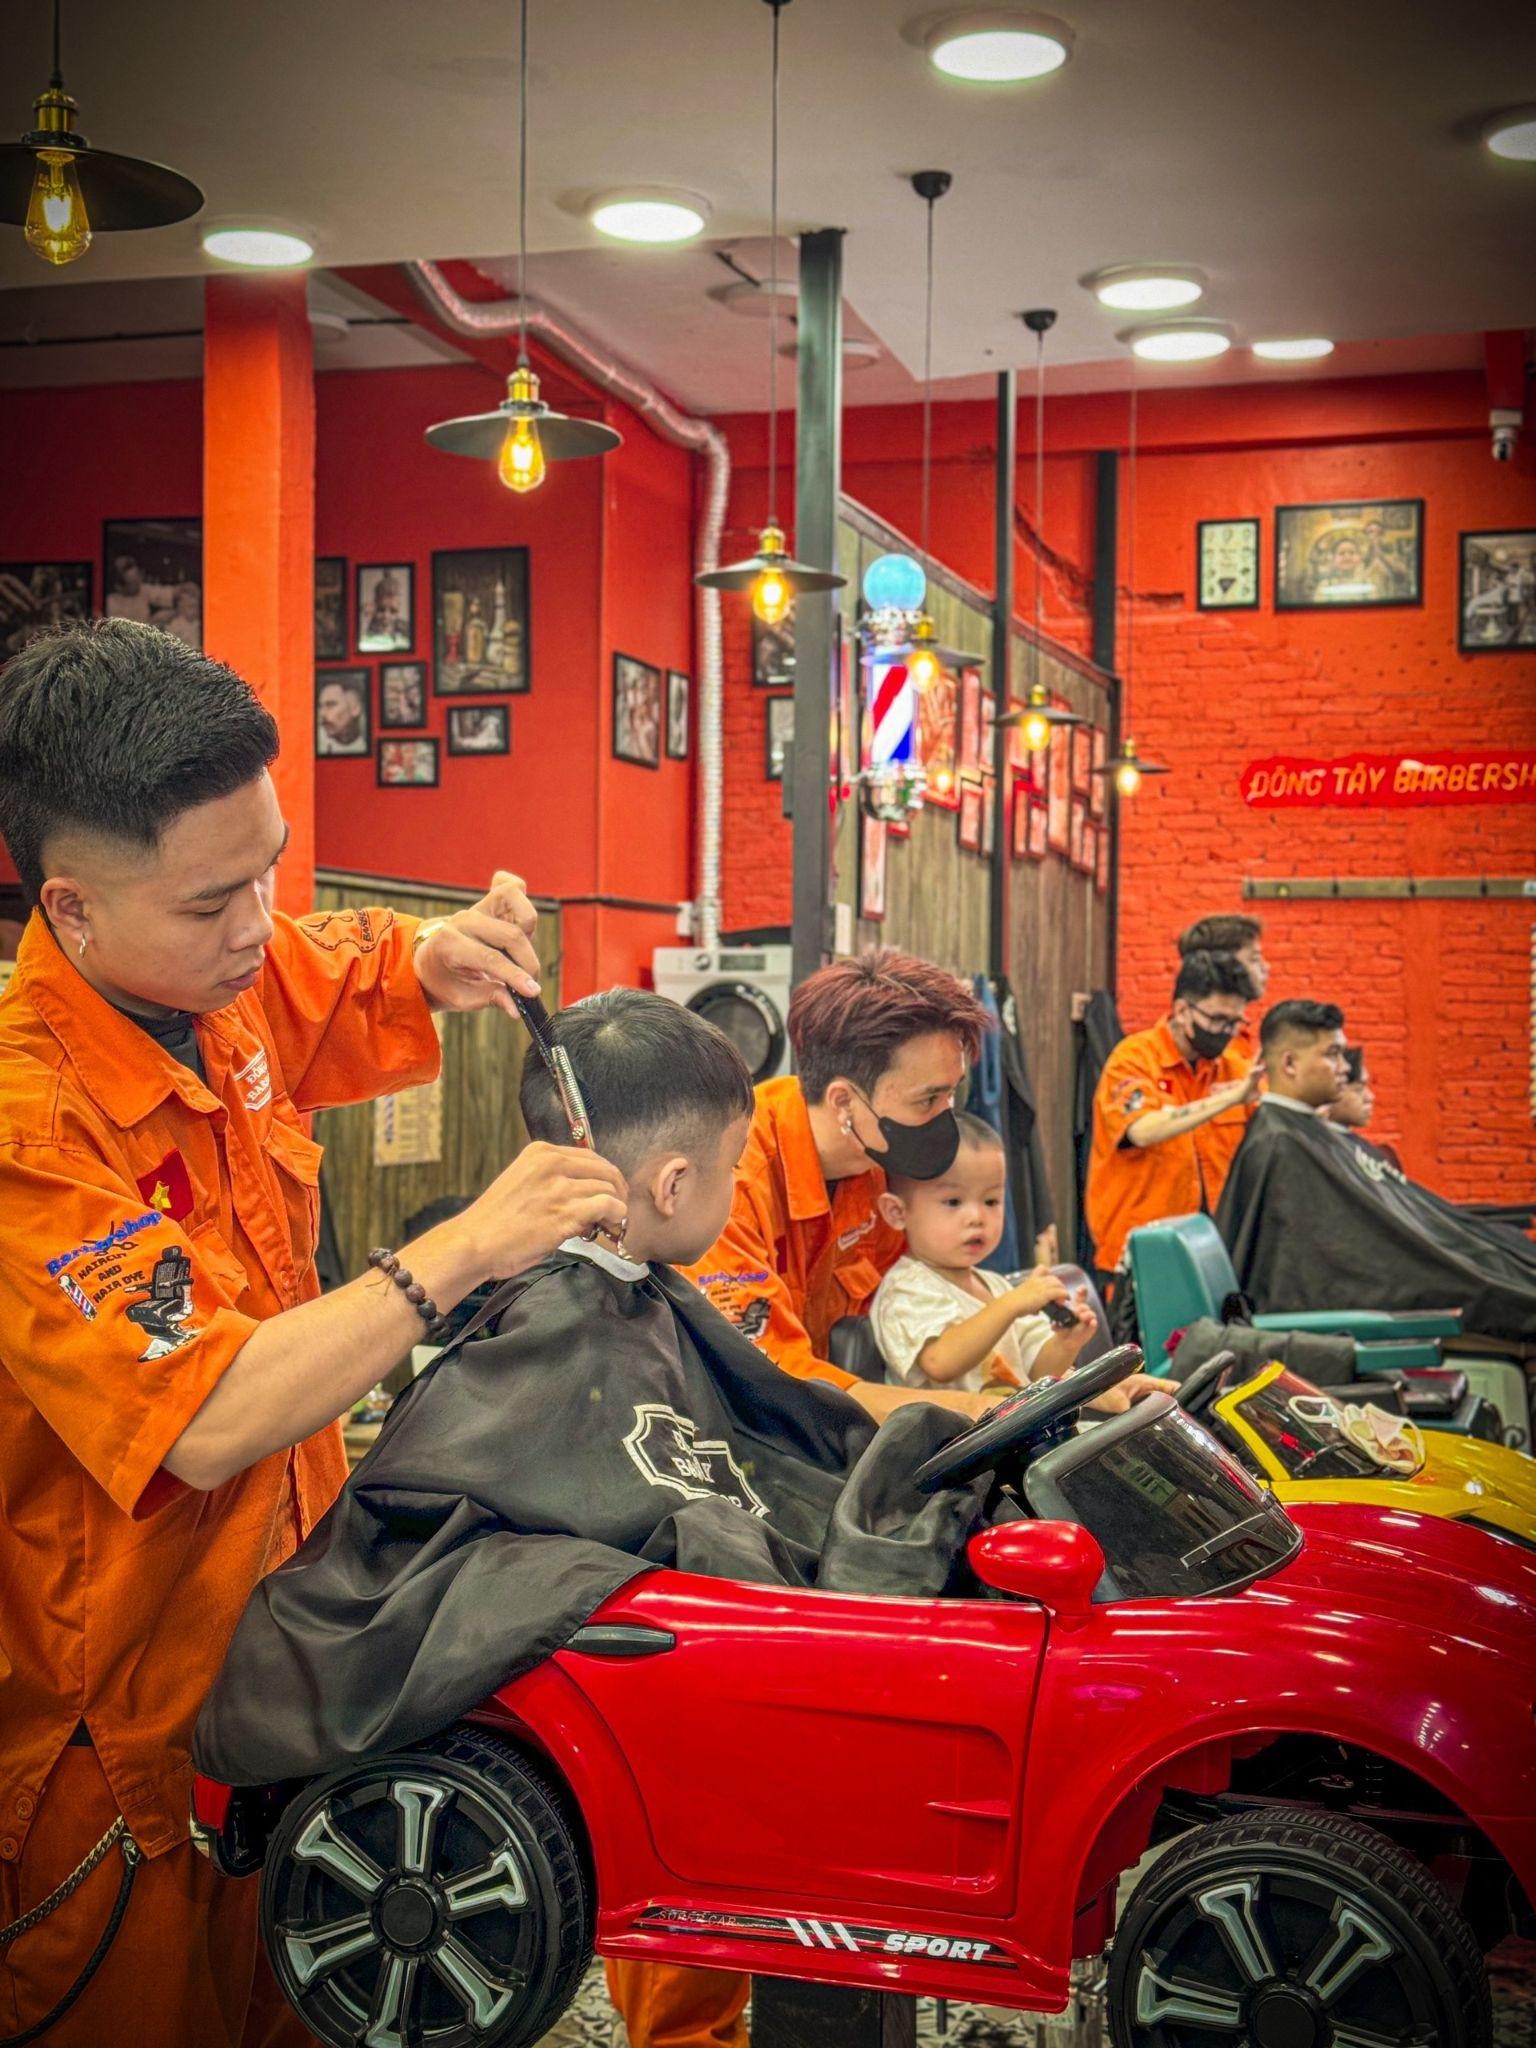 Đông Tây Barbershop: Nơi trải nghiệm cắt tóc độc đáo và hấp dẫn dành cho phái mạnh - ảnh 5